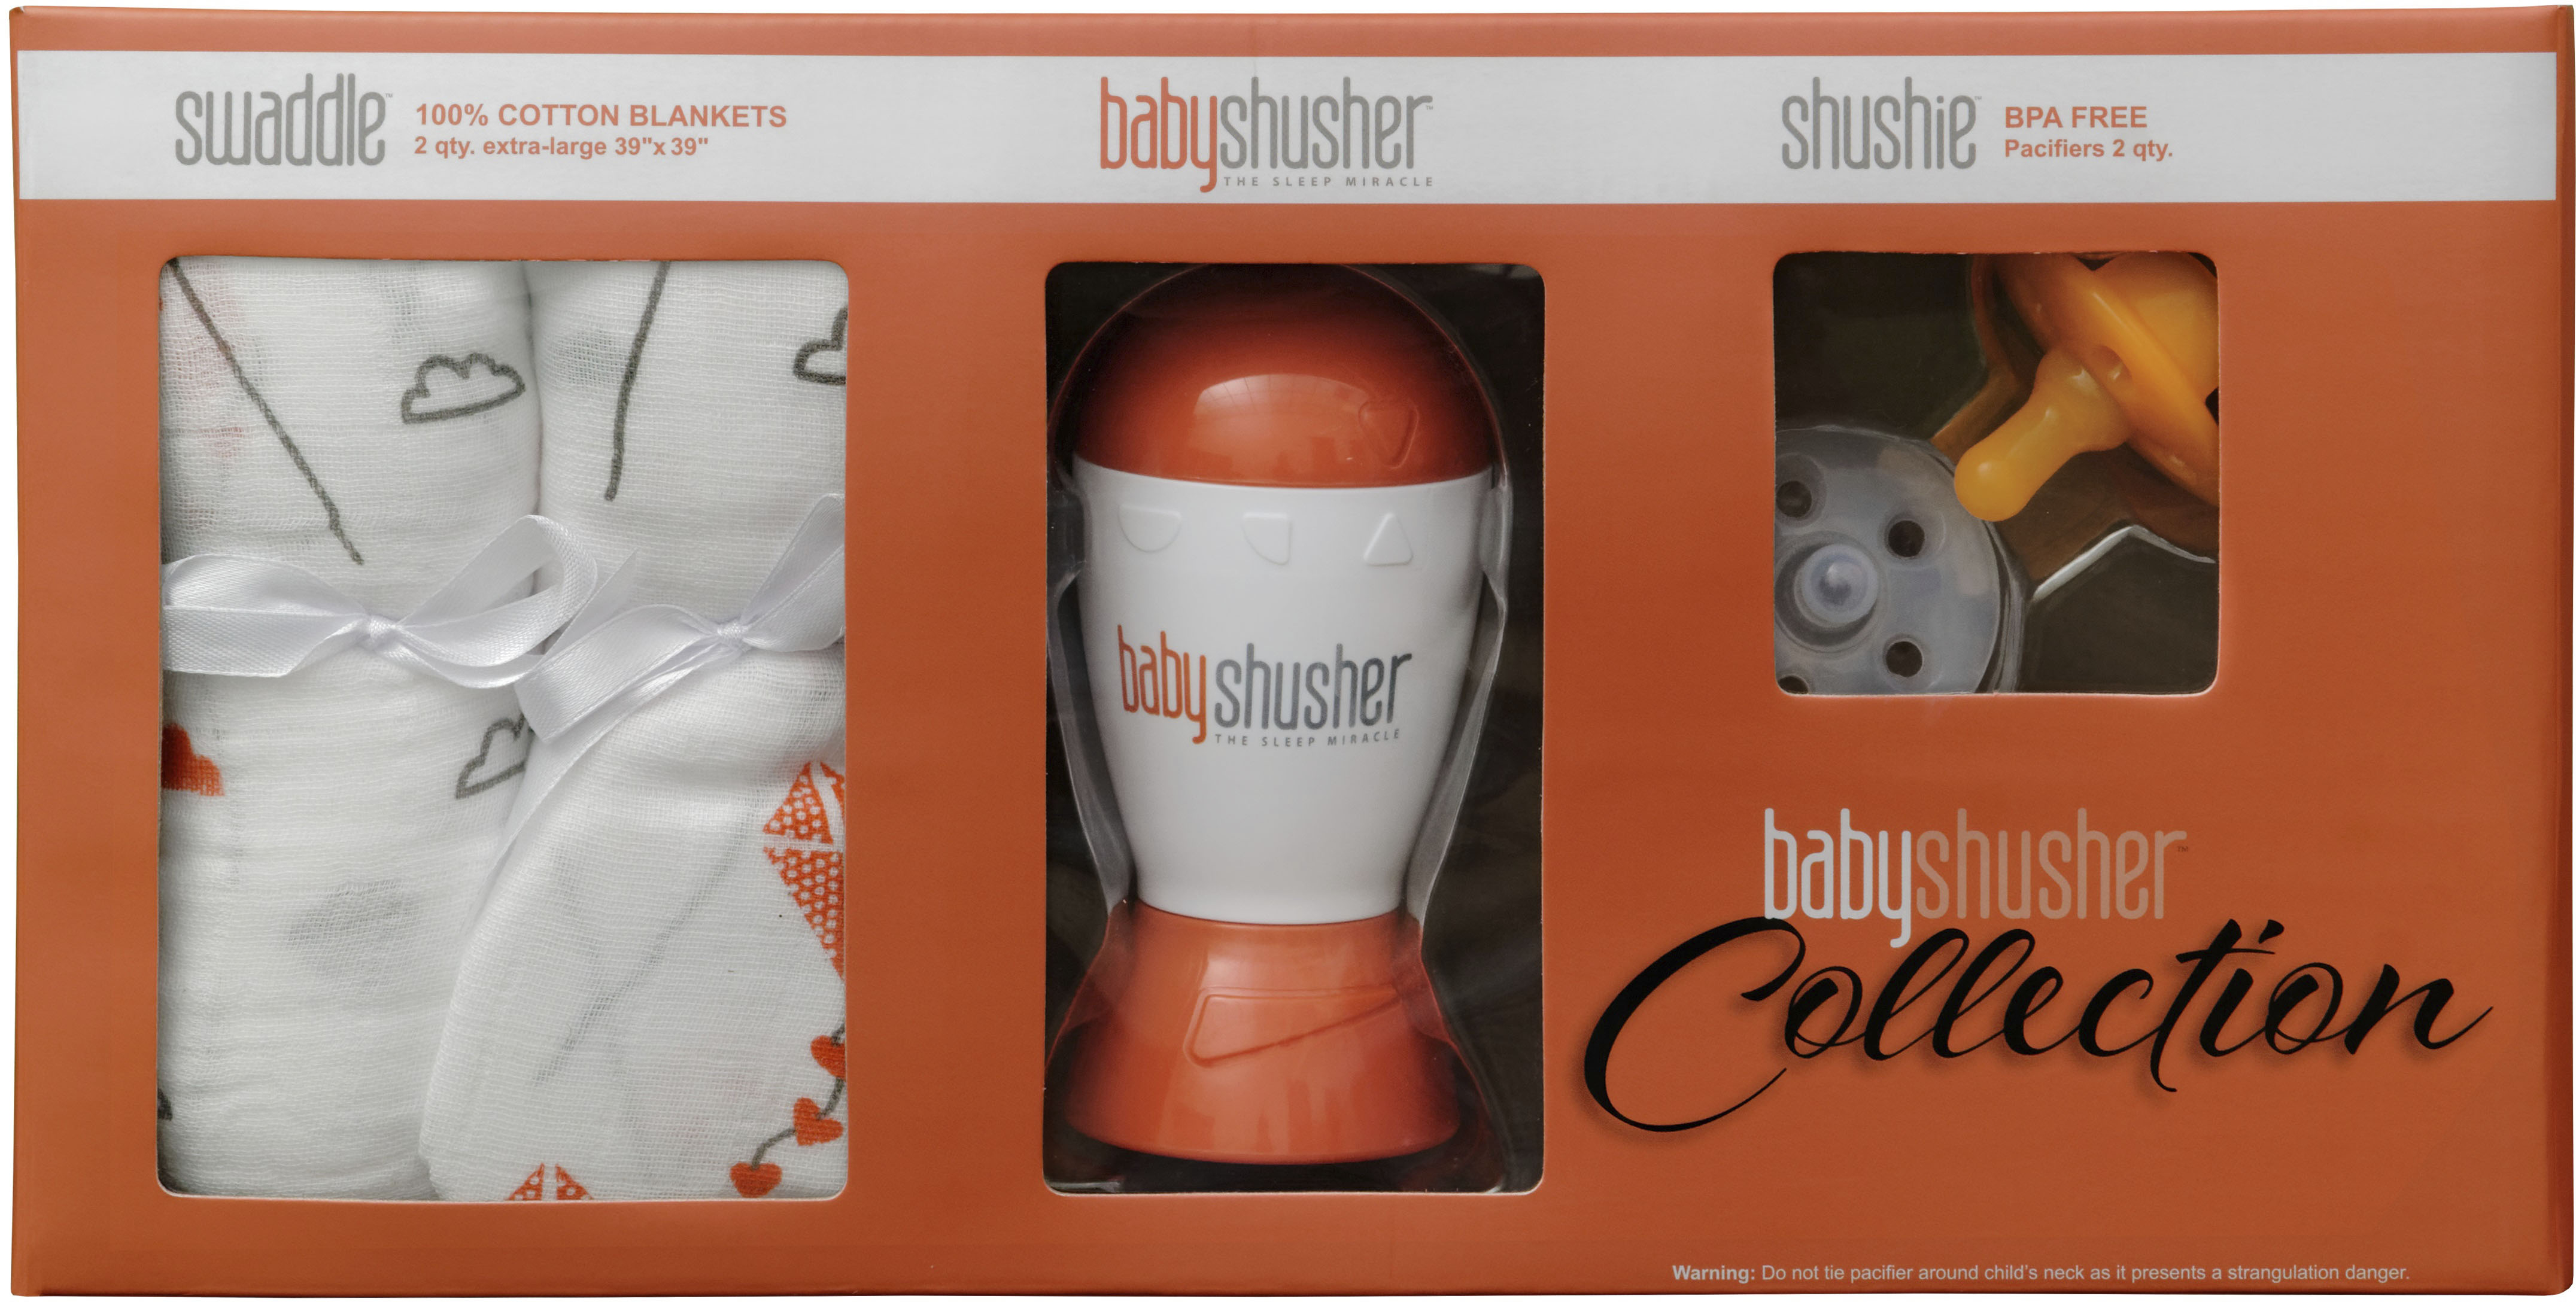 Best Buy: Baby Shusher Sleep Soother Collection Gift Set Orange